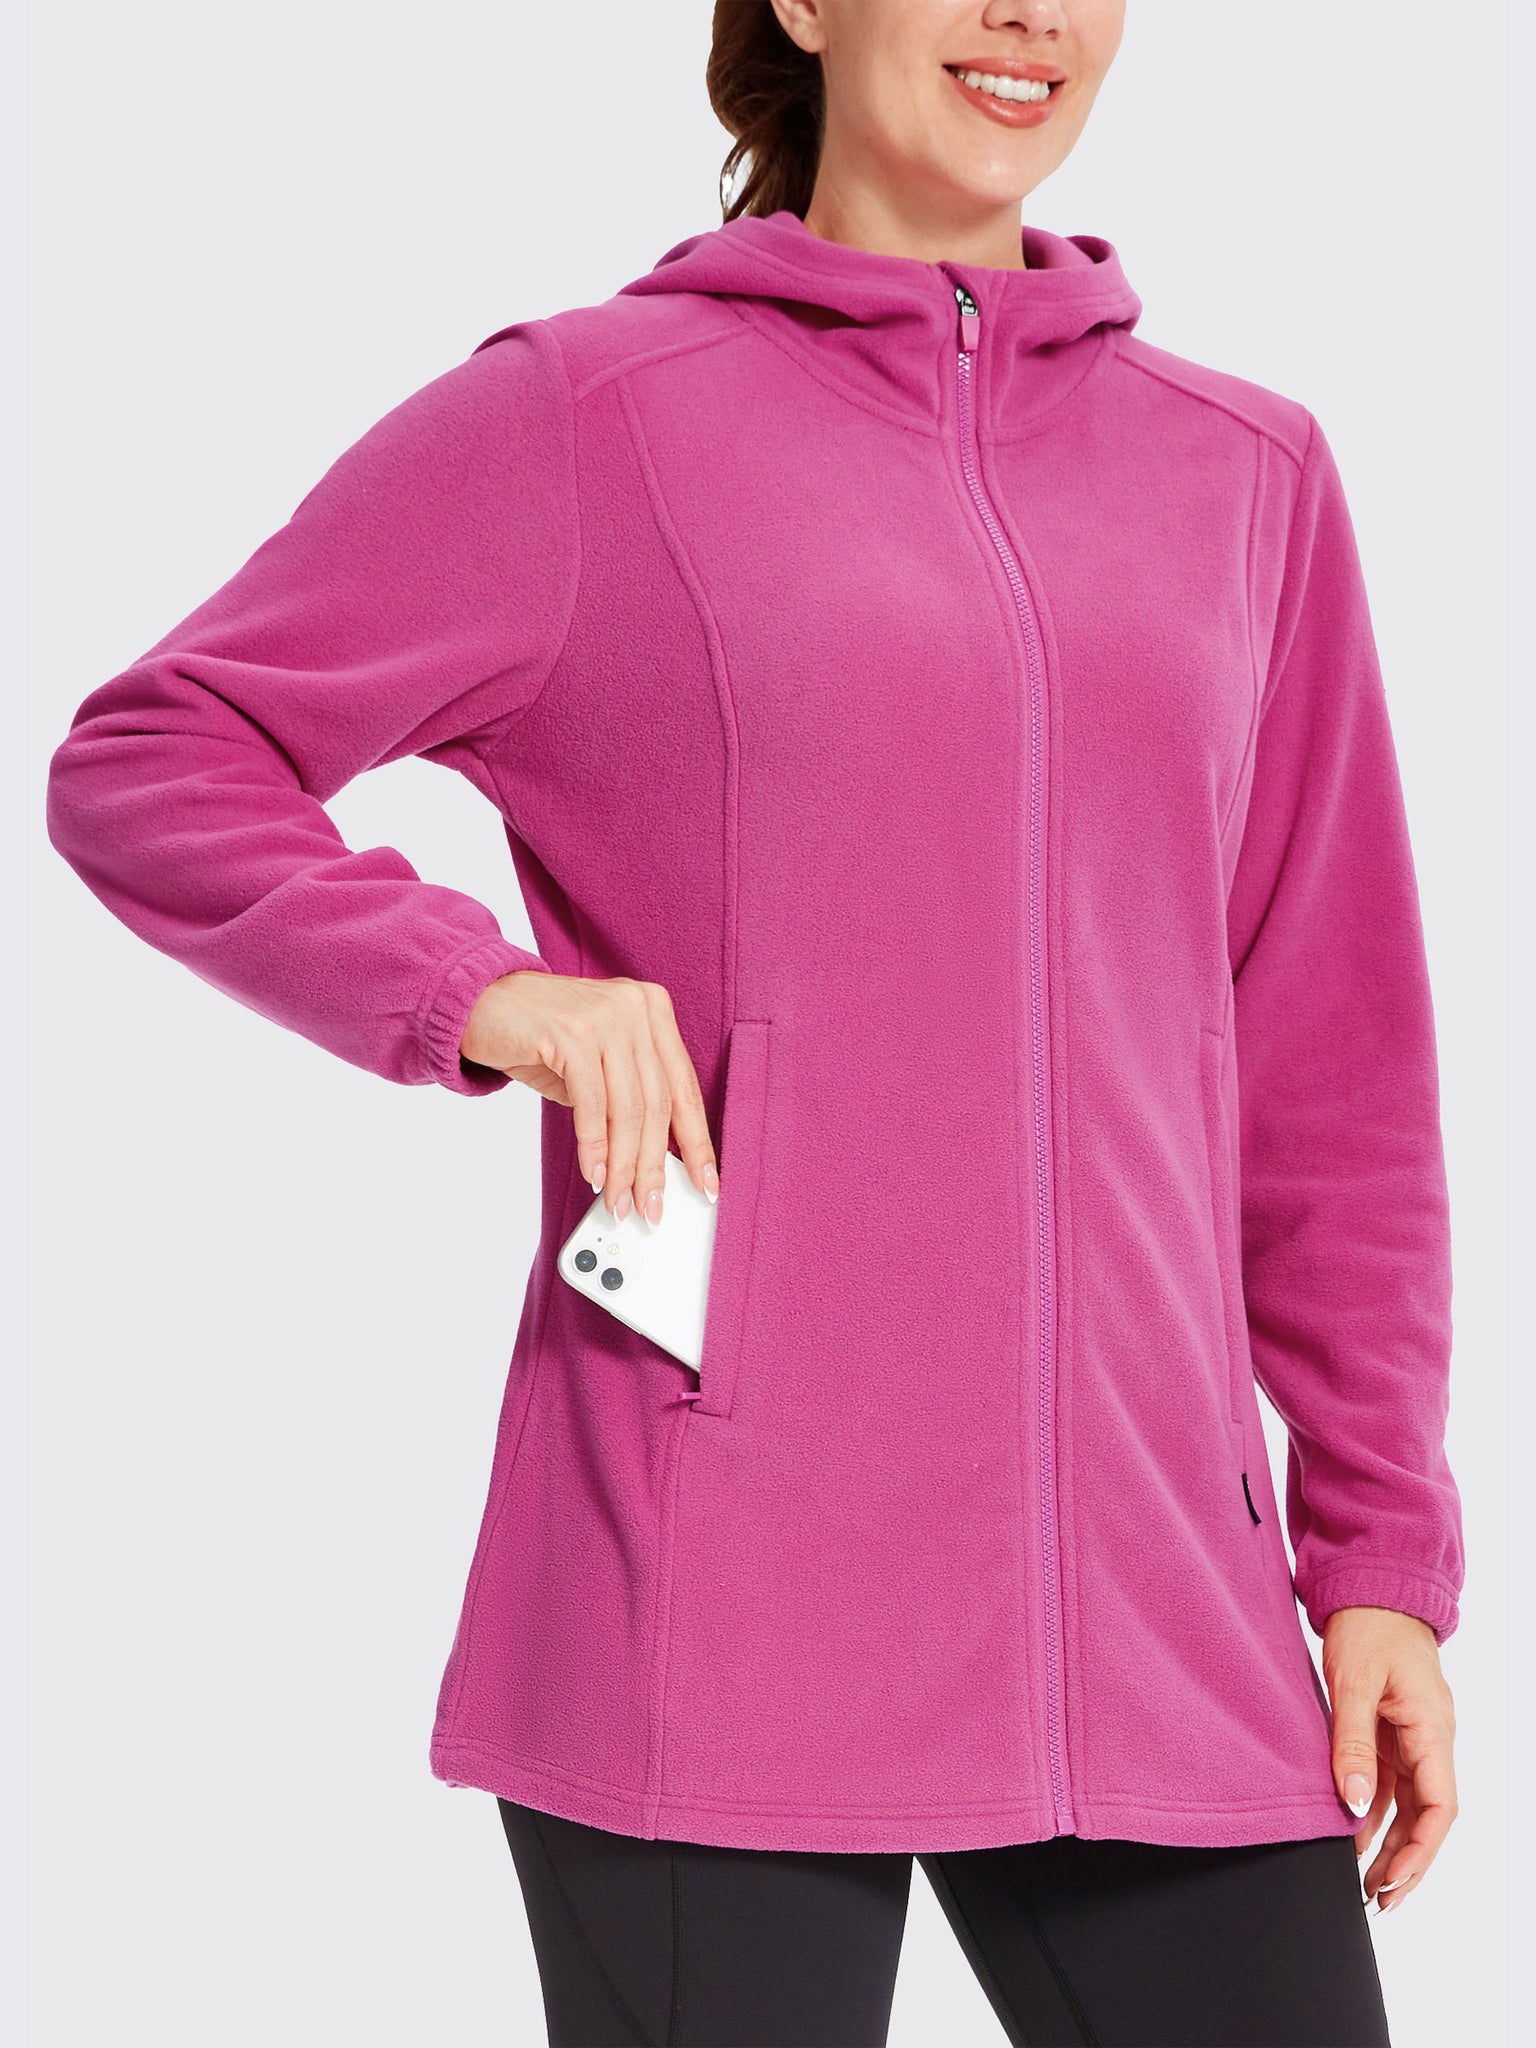 Women's Fleece Full-Zip Jacket Rose Pink1